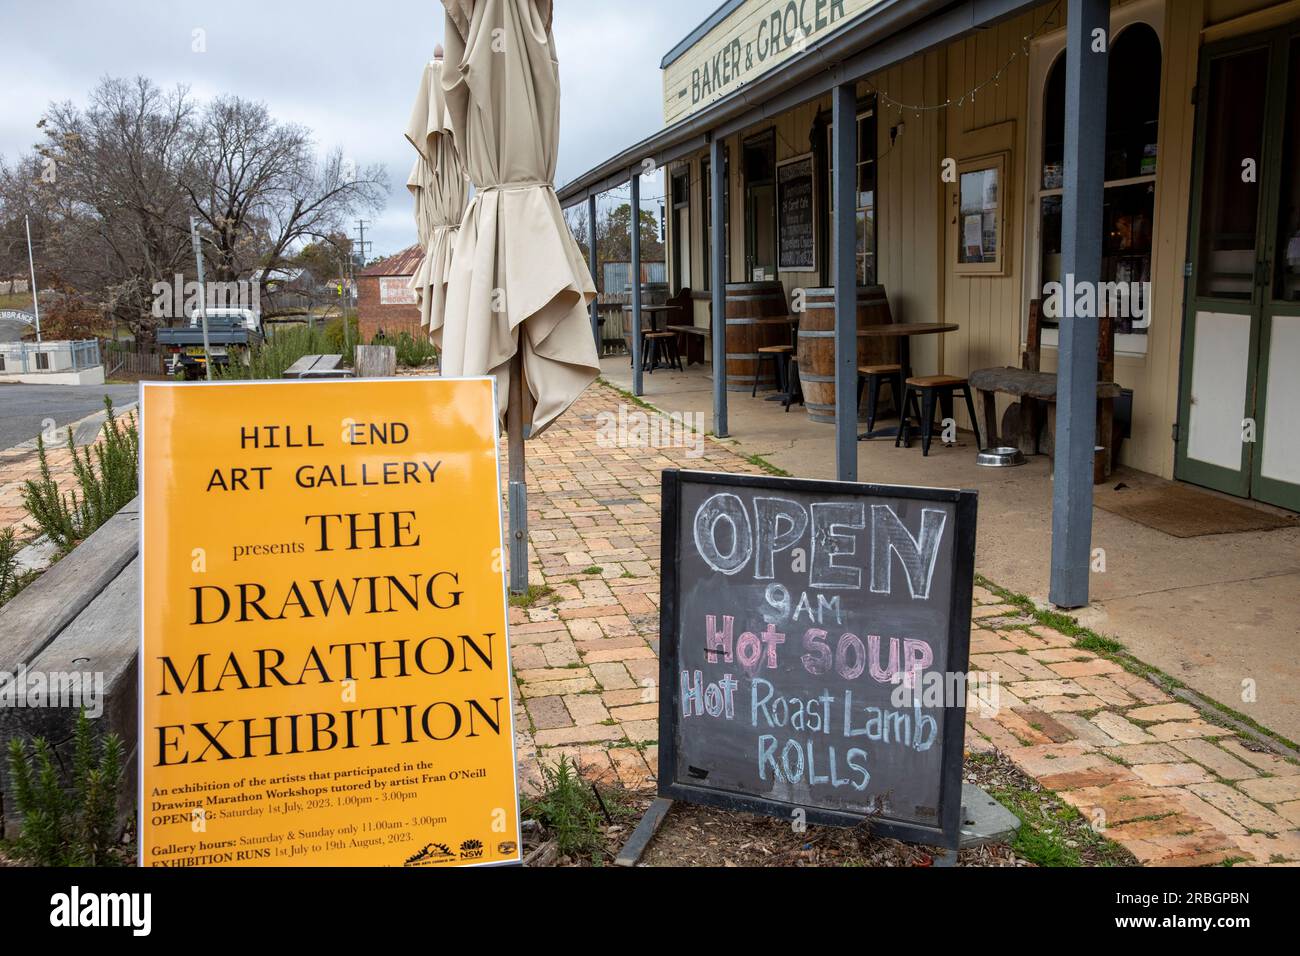 Hill End ville historique de ruée vers l'or en Nouvelle-Galles du Sud, galerie d'art et exposition de dessin, Nouvelle-Galles du Sud, Australie Banque D'Images